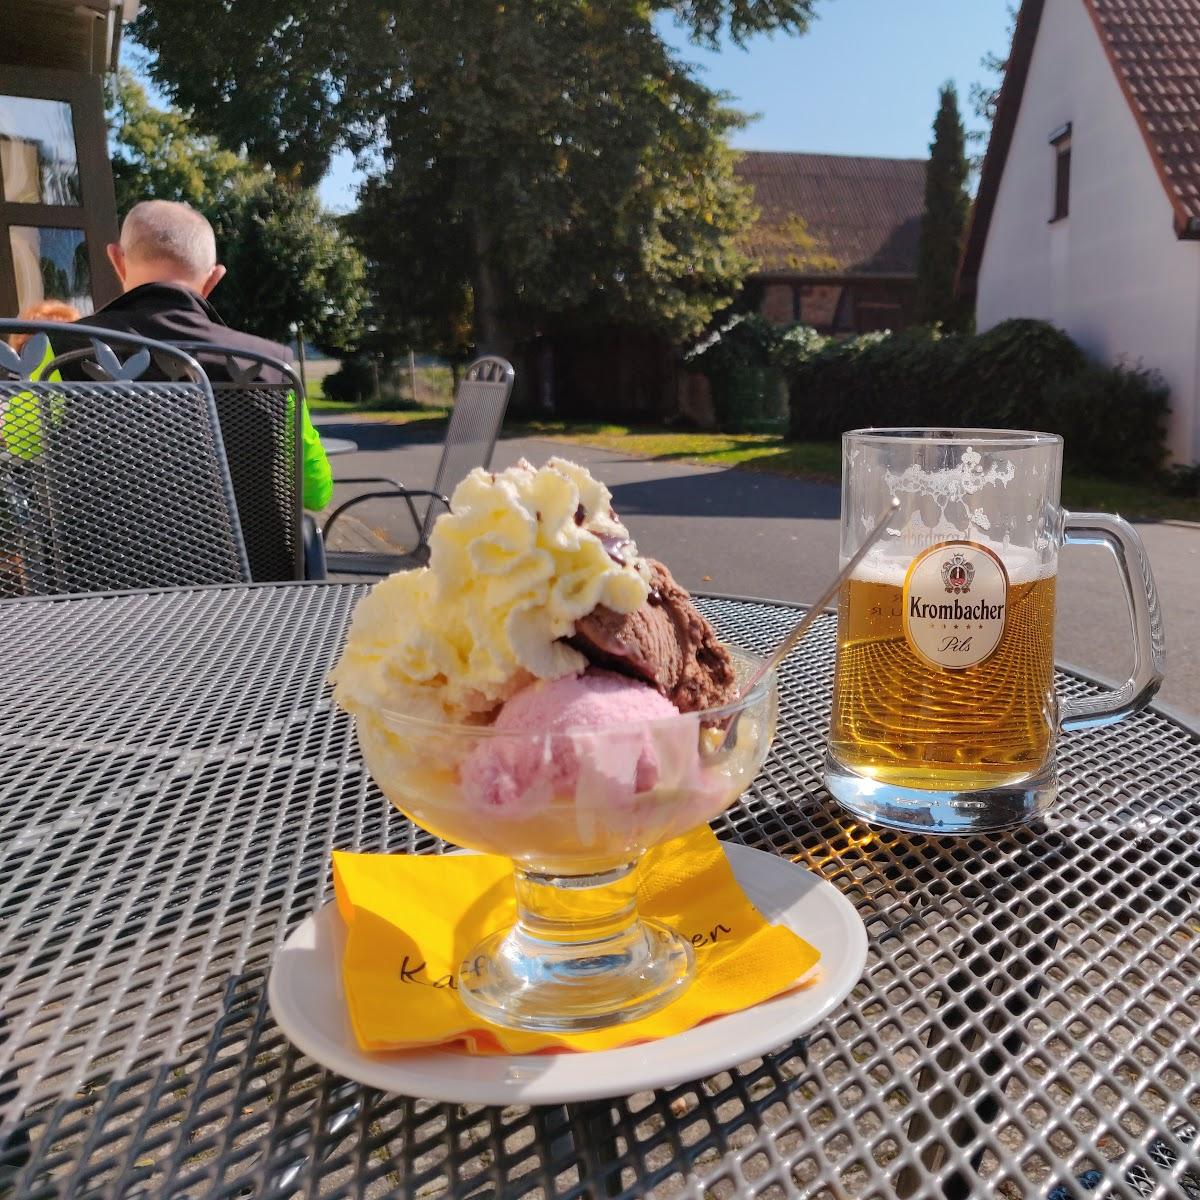 Restaurant "Schlaubeperle" in Grunow-Dammendorf